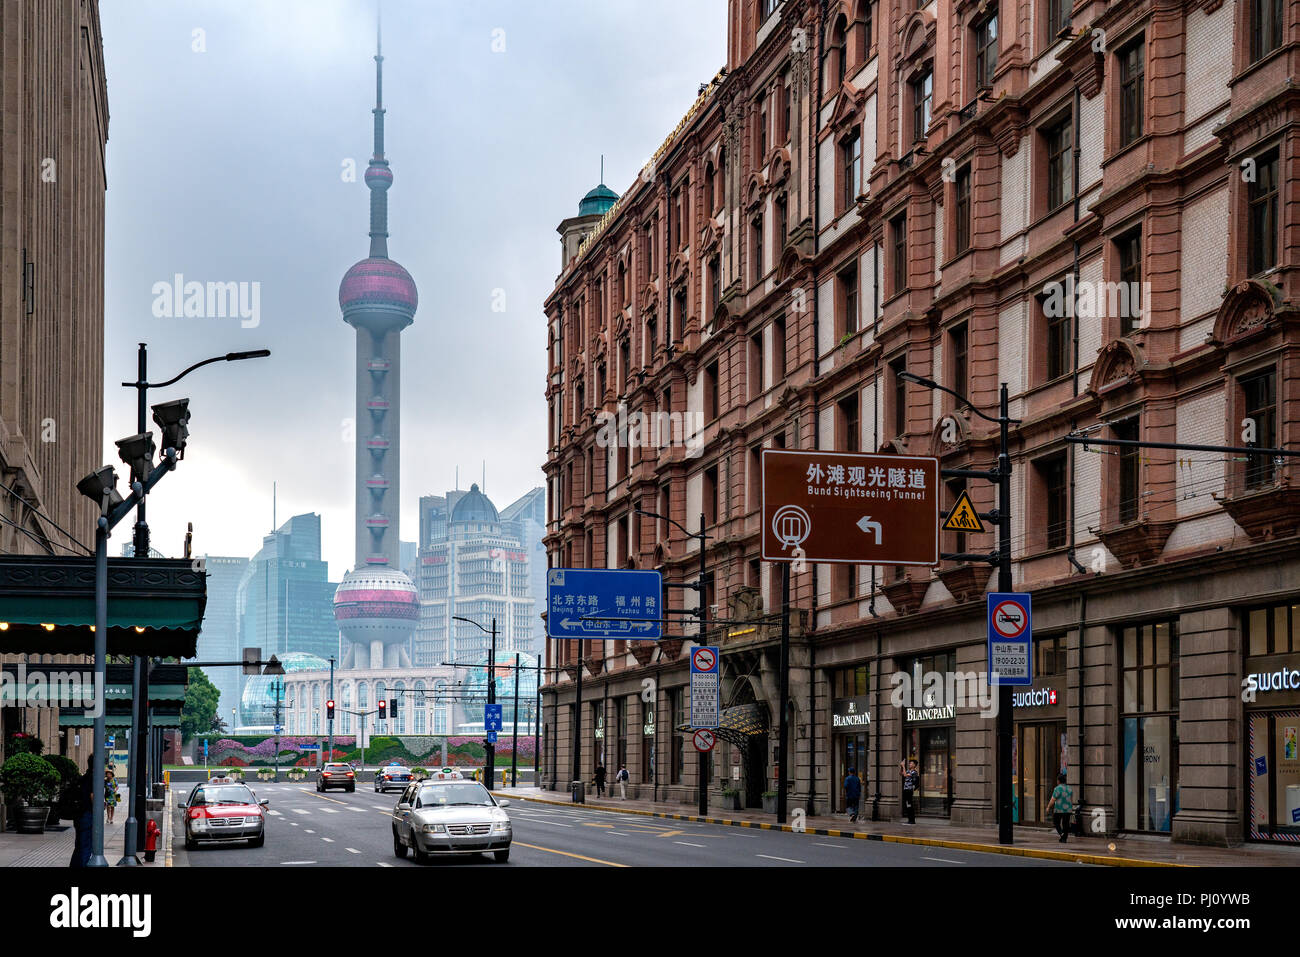 Spaziergang am frühen Morgen Down East Nanjing Road, endet mit einem herrlichen Blick auf den Oriental Pearl Tower in Shanghai, direkt vor dem Hotel Fairmont Peace. Stockfoto